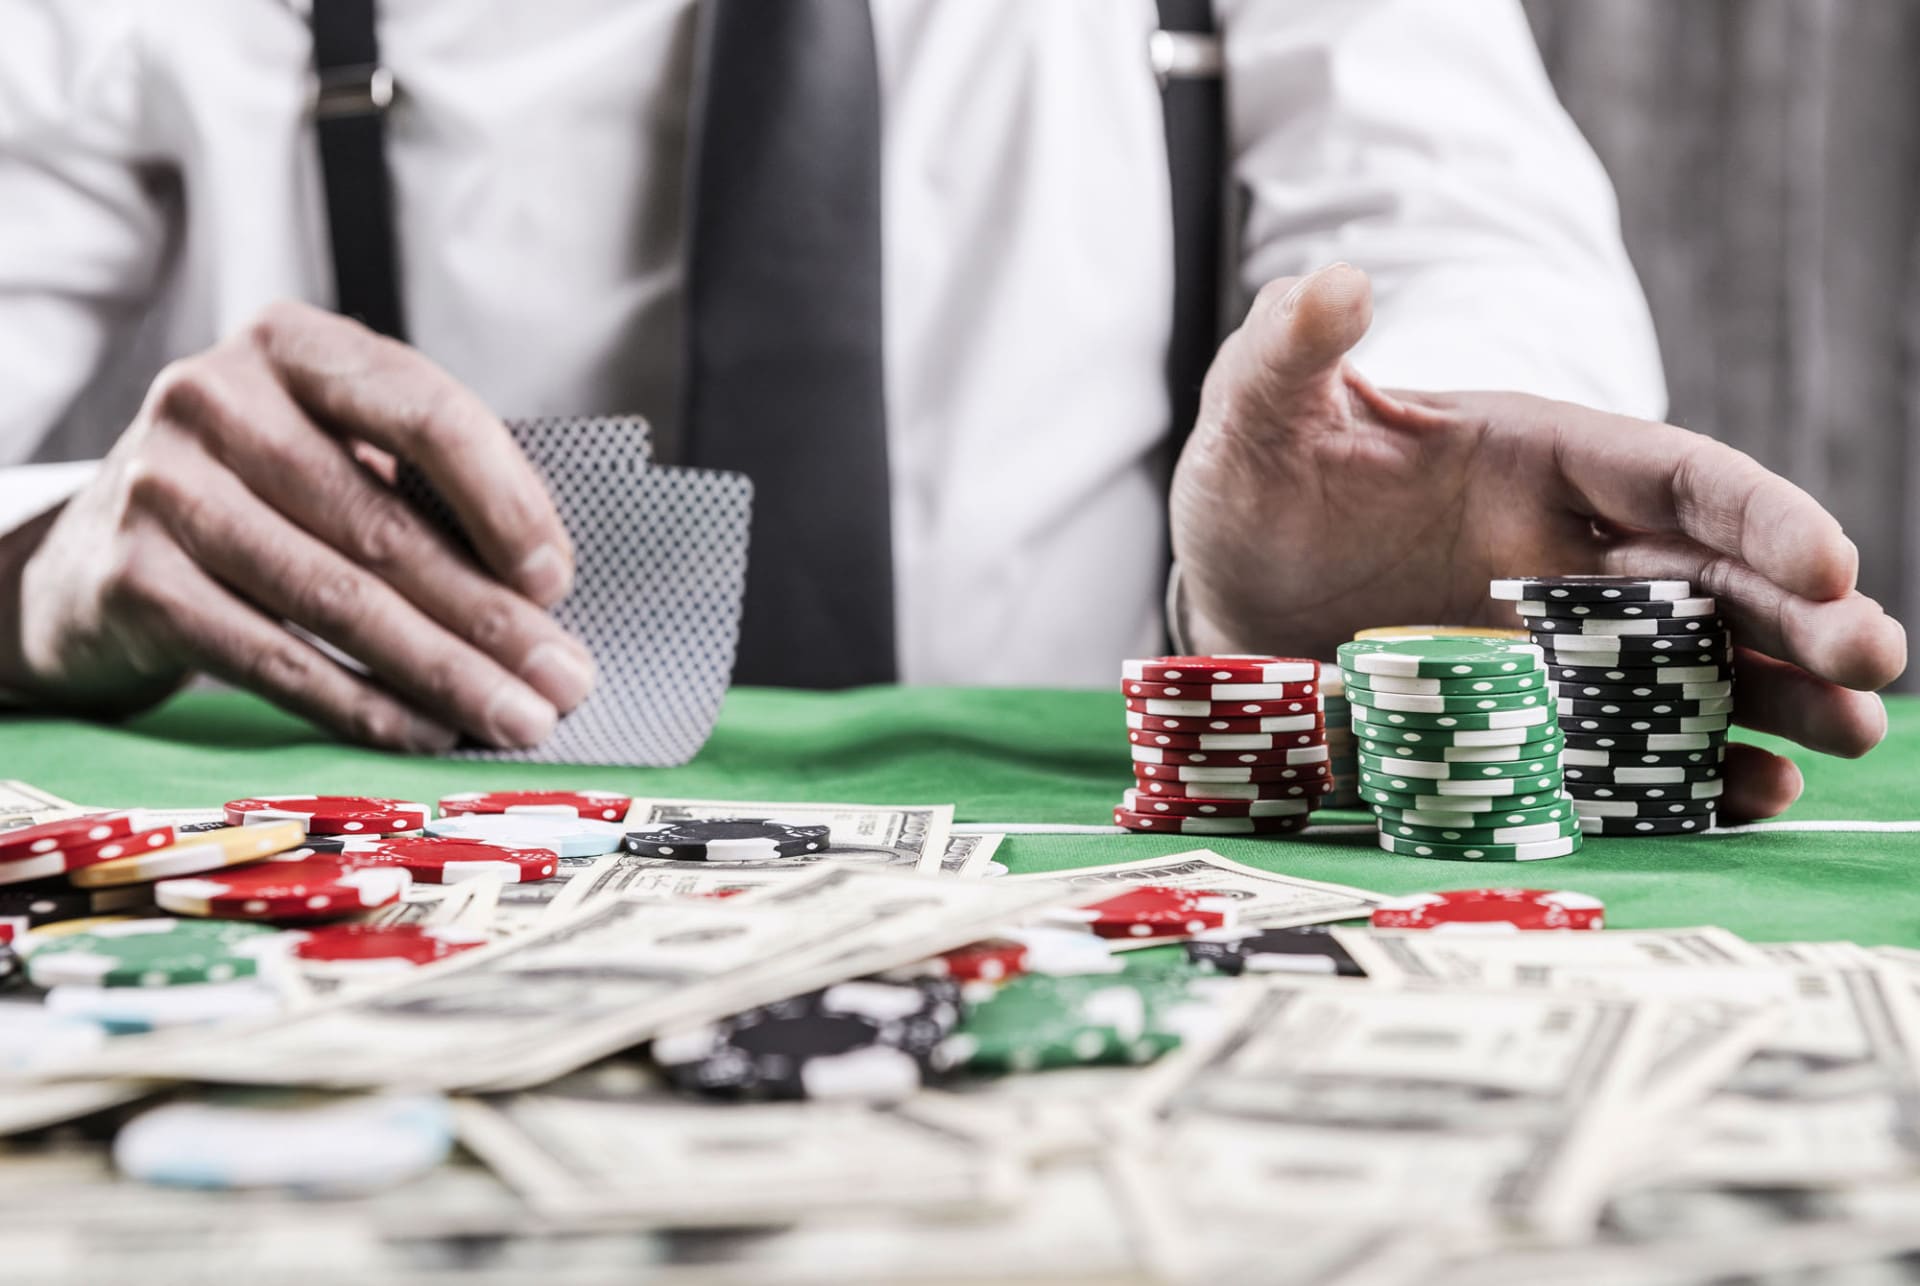 Зачем покер руму проводить бесплатные соревнования?